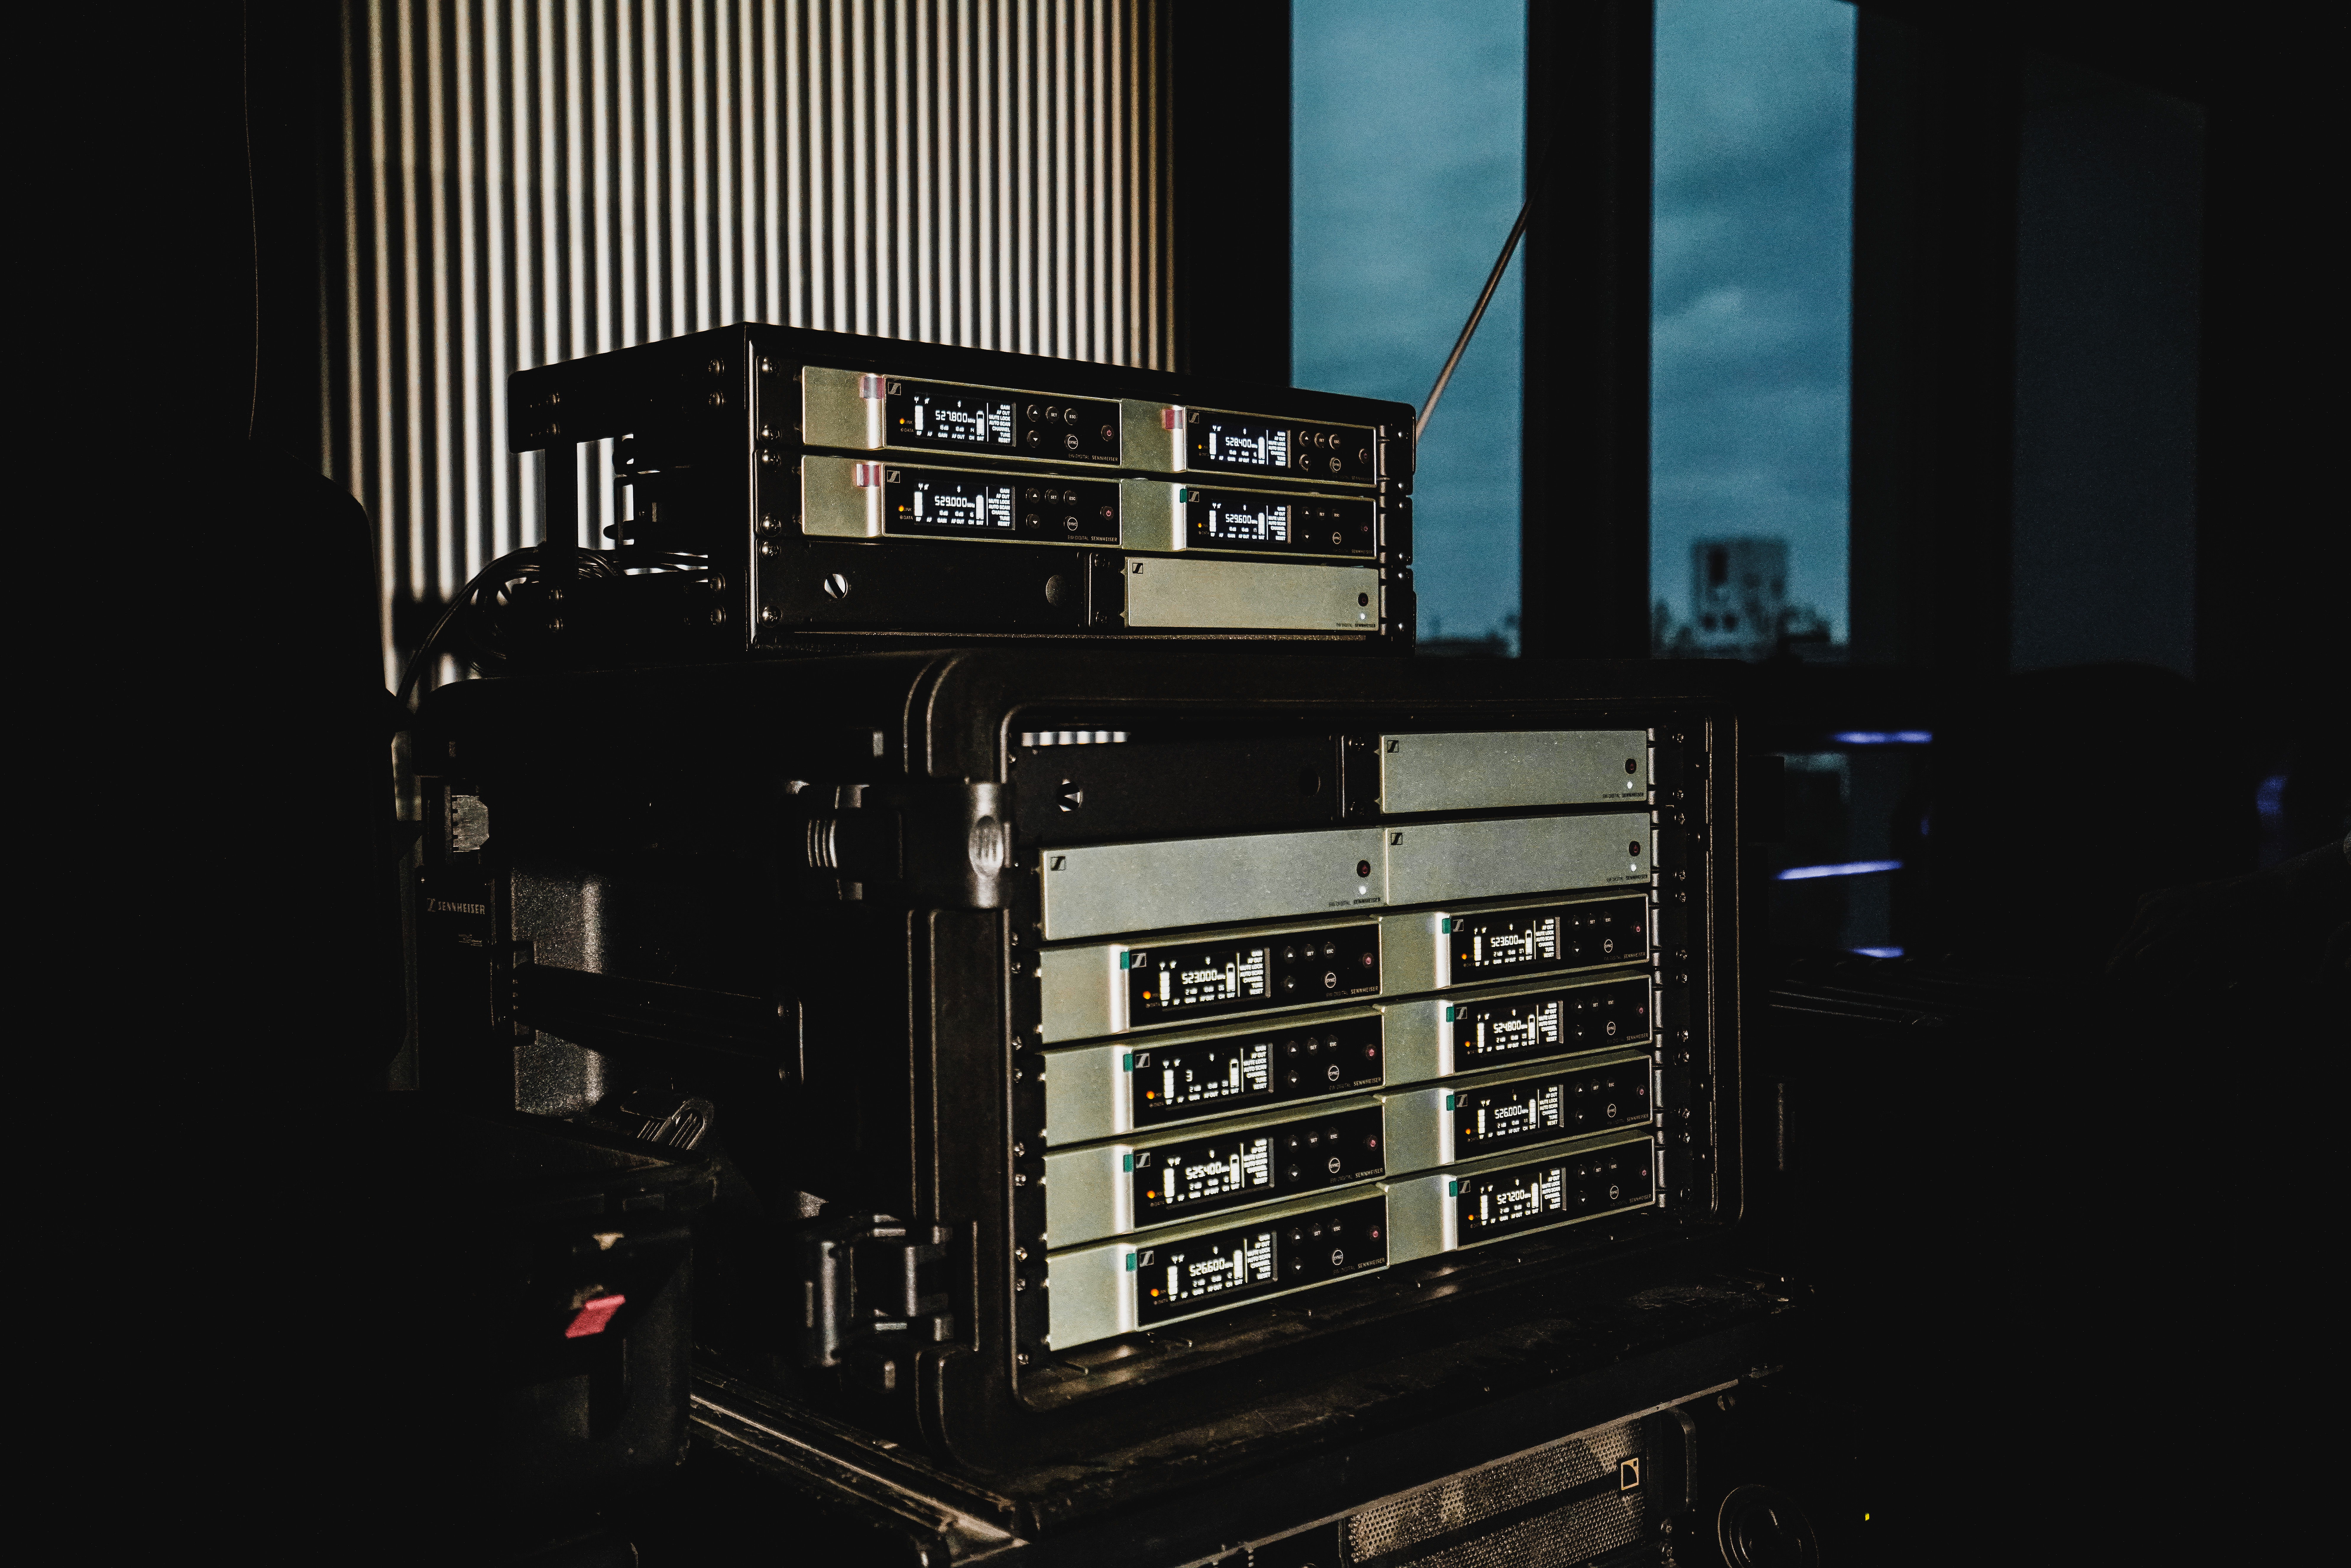 EW-D系列配备的等间距频点设置能高效利用频谱资源，简化频率协调的工作流程